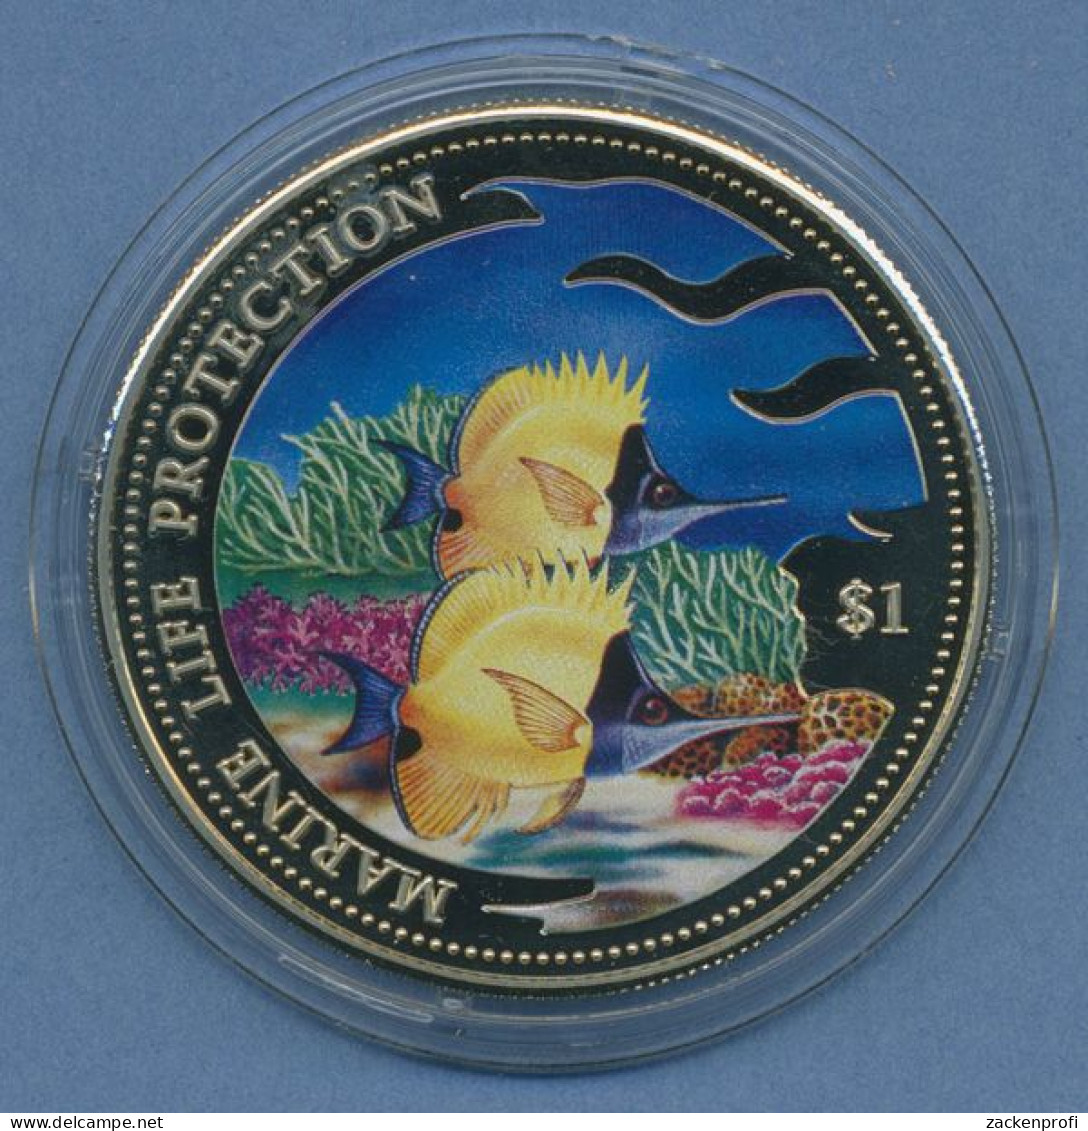 Salomonen 1 Dollar 2001 Meeresschutz Fische, Farbig, PP In Kapsel (m4534) - Solomoneilanden